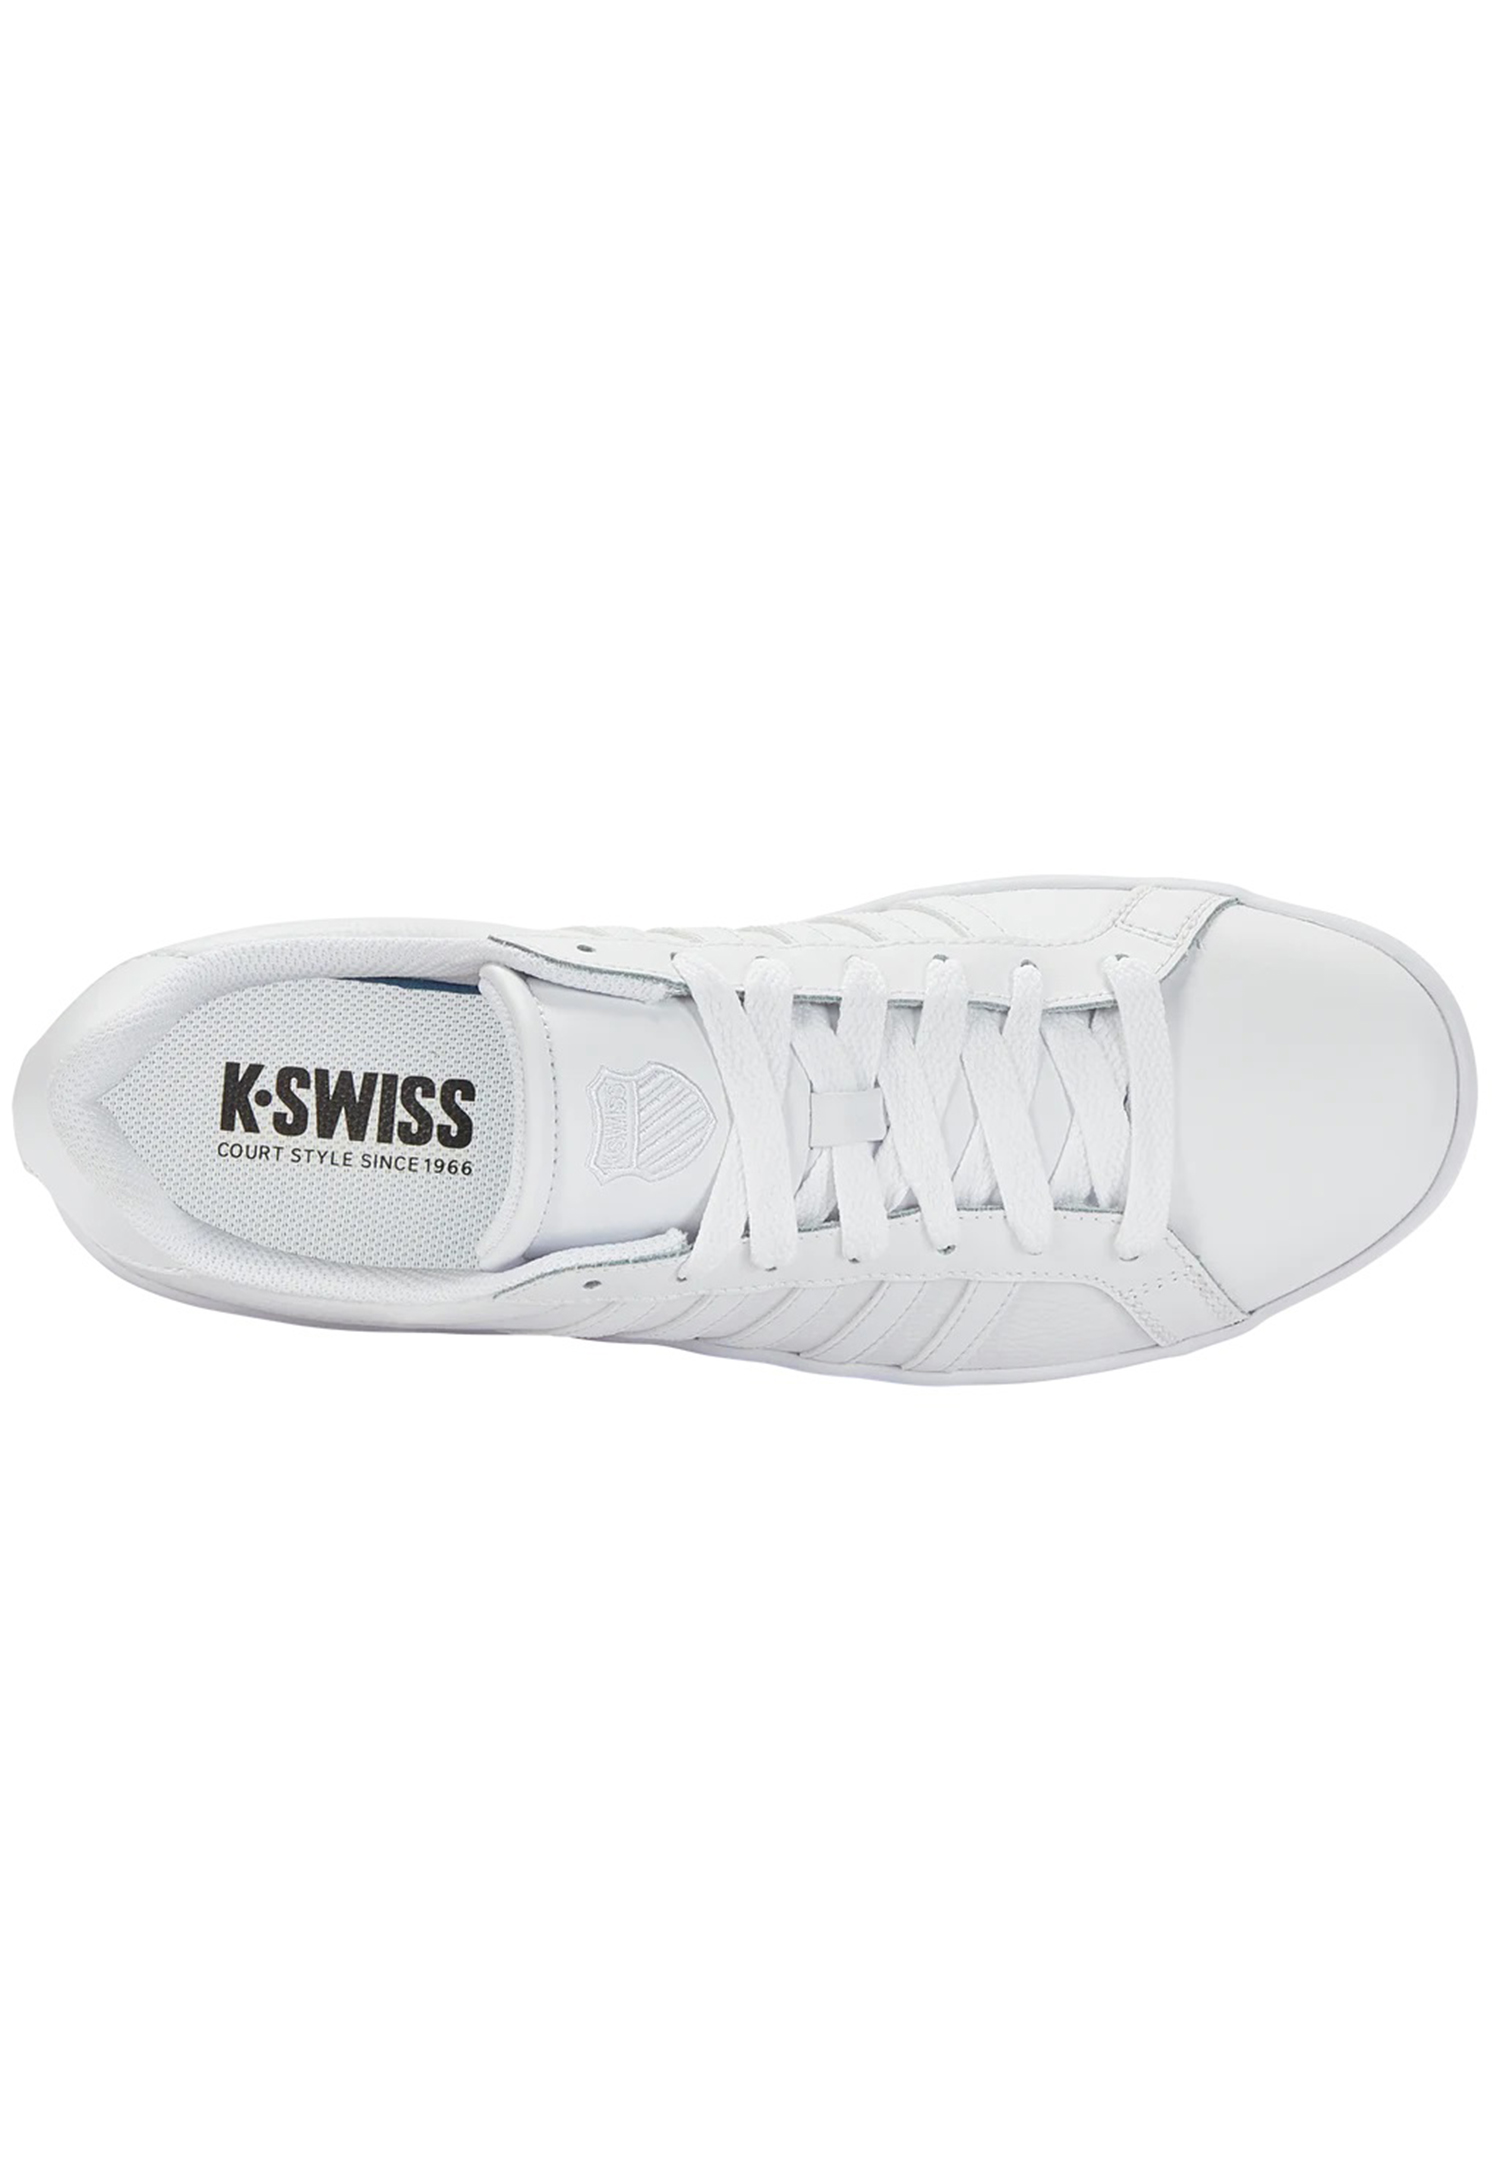 K-SWISS Court TIEBREAK Herren Sneaker Sportschuh 07011-154-M Weiß/Grau 